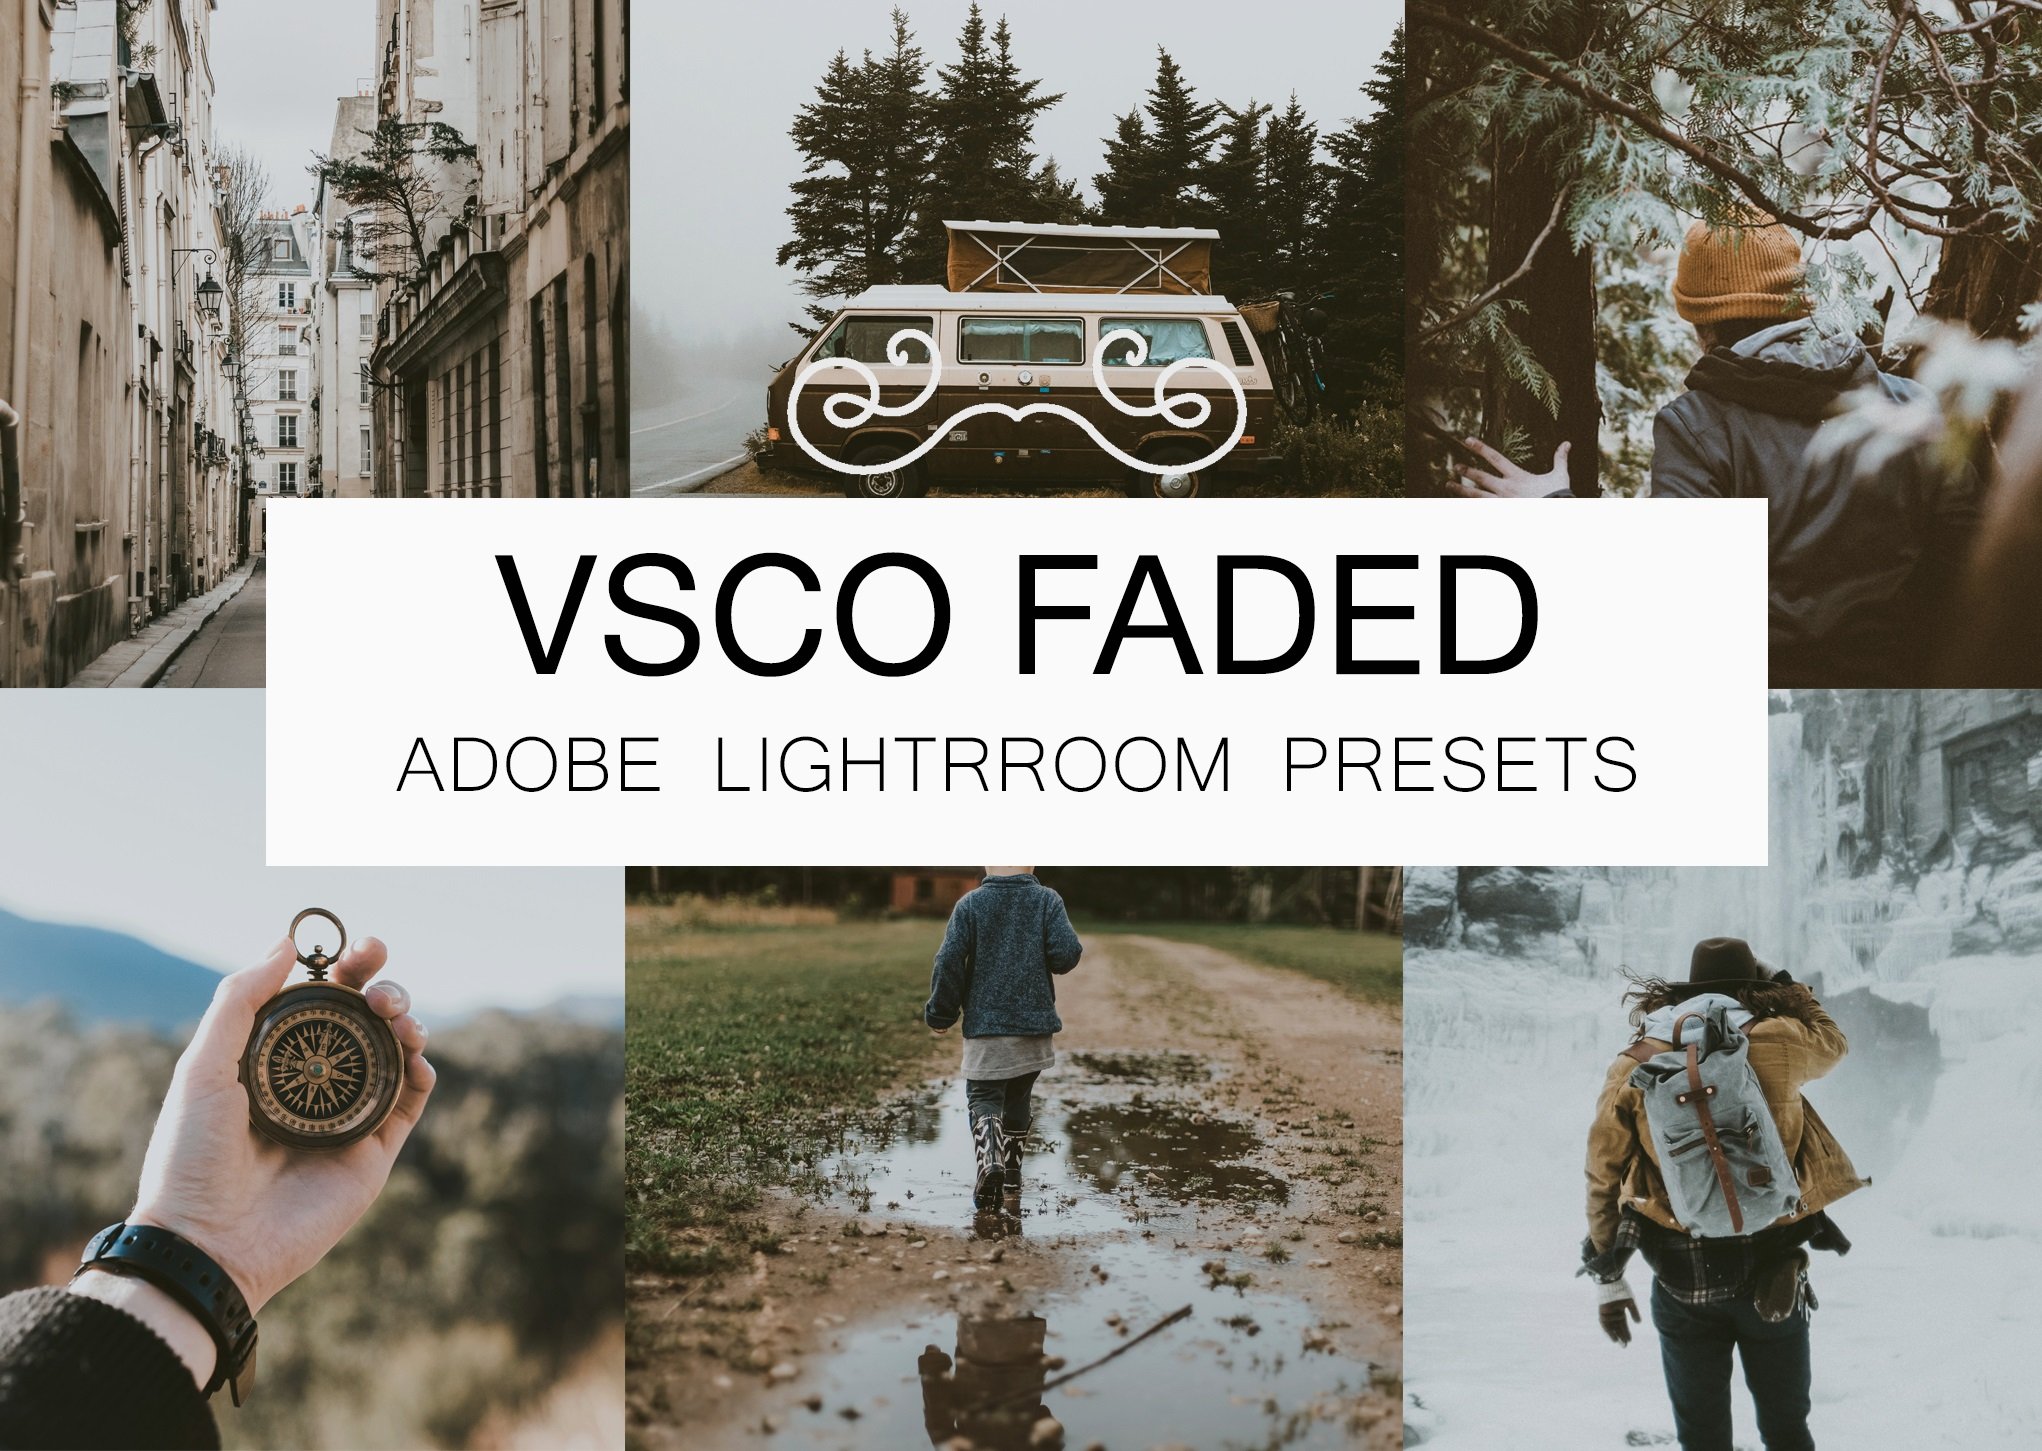 VSCO Faded Lightroom Presets Bundlecover image.